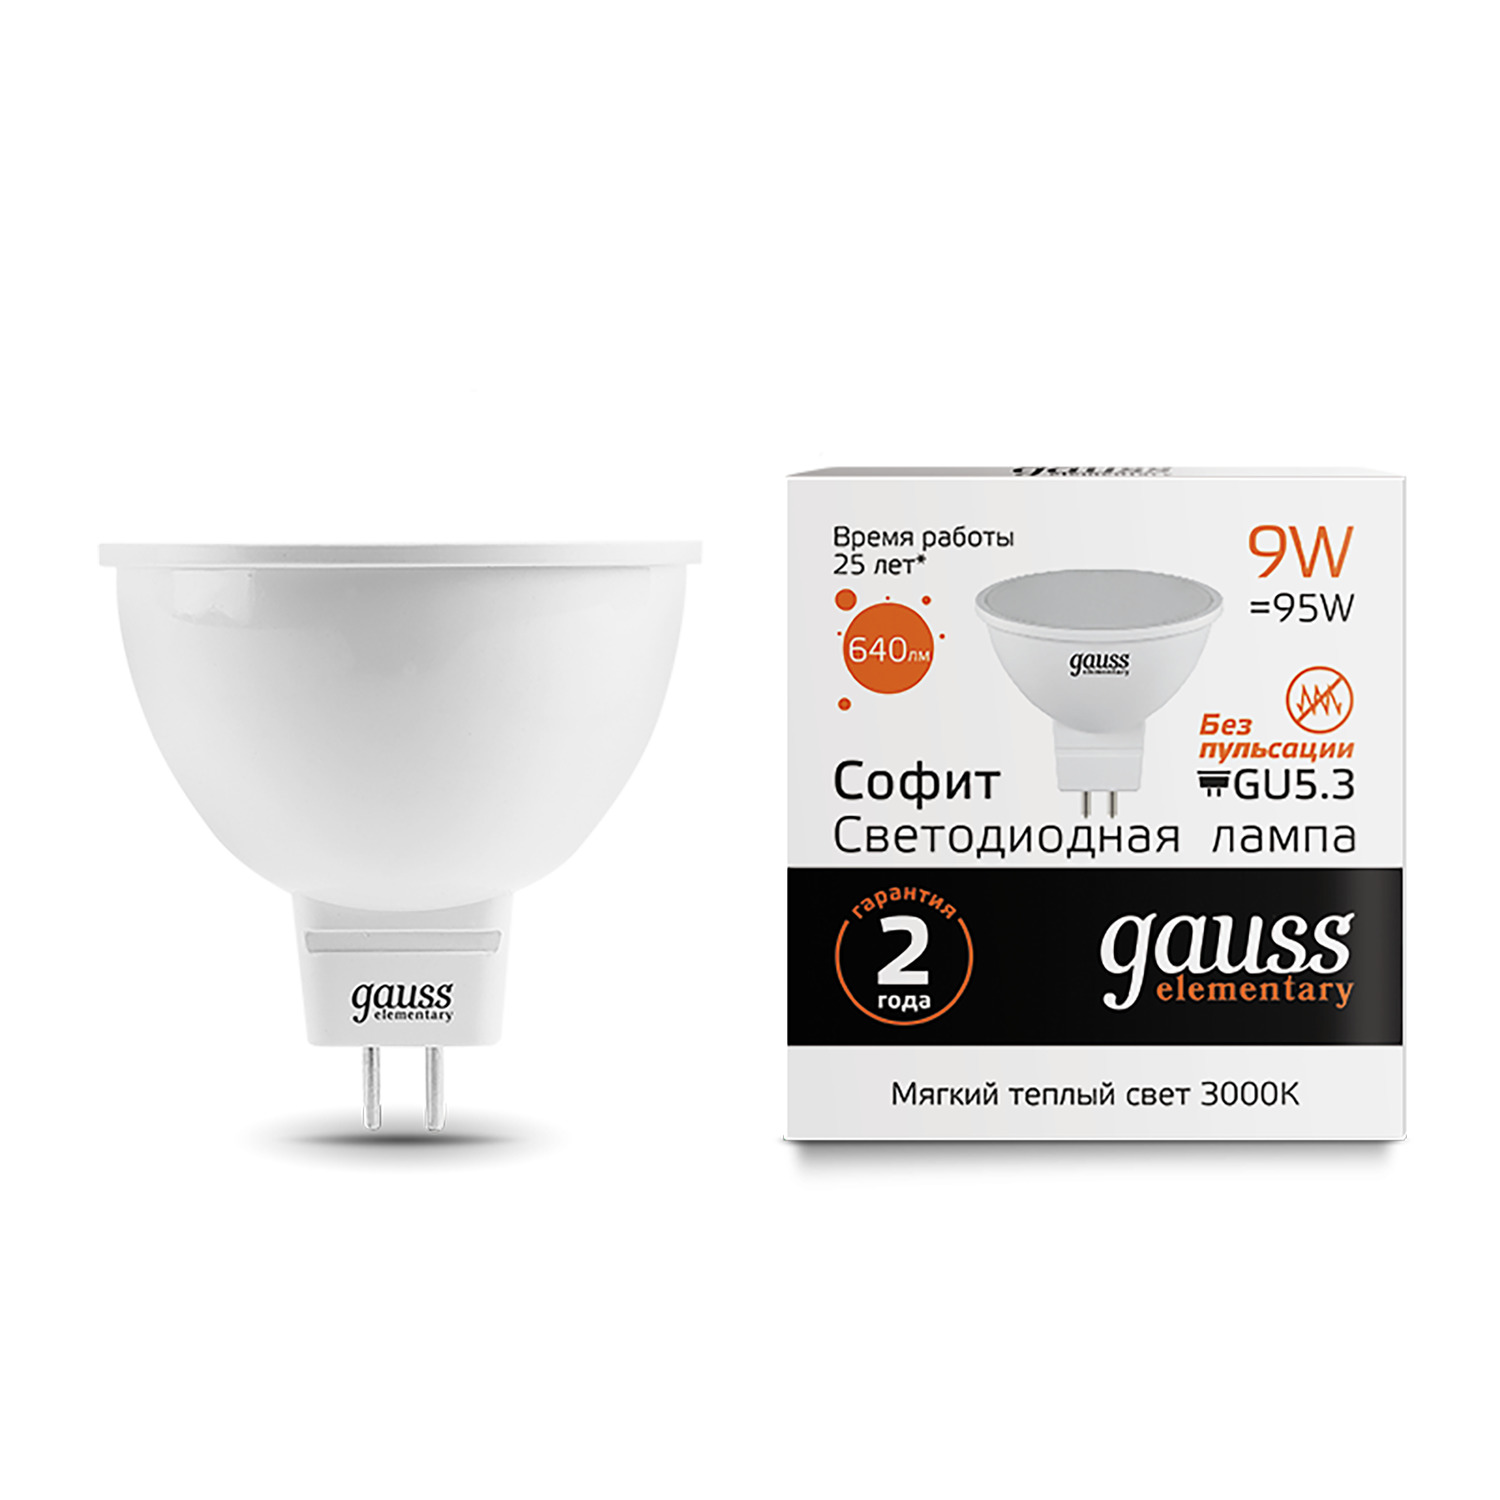 Лампа Gauss LED Elementary MR16 GU5.3 9W 3000K лампочка gauss 13526 elementary mr16